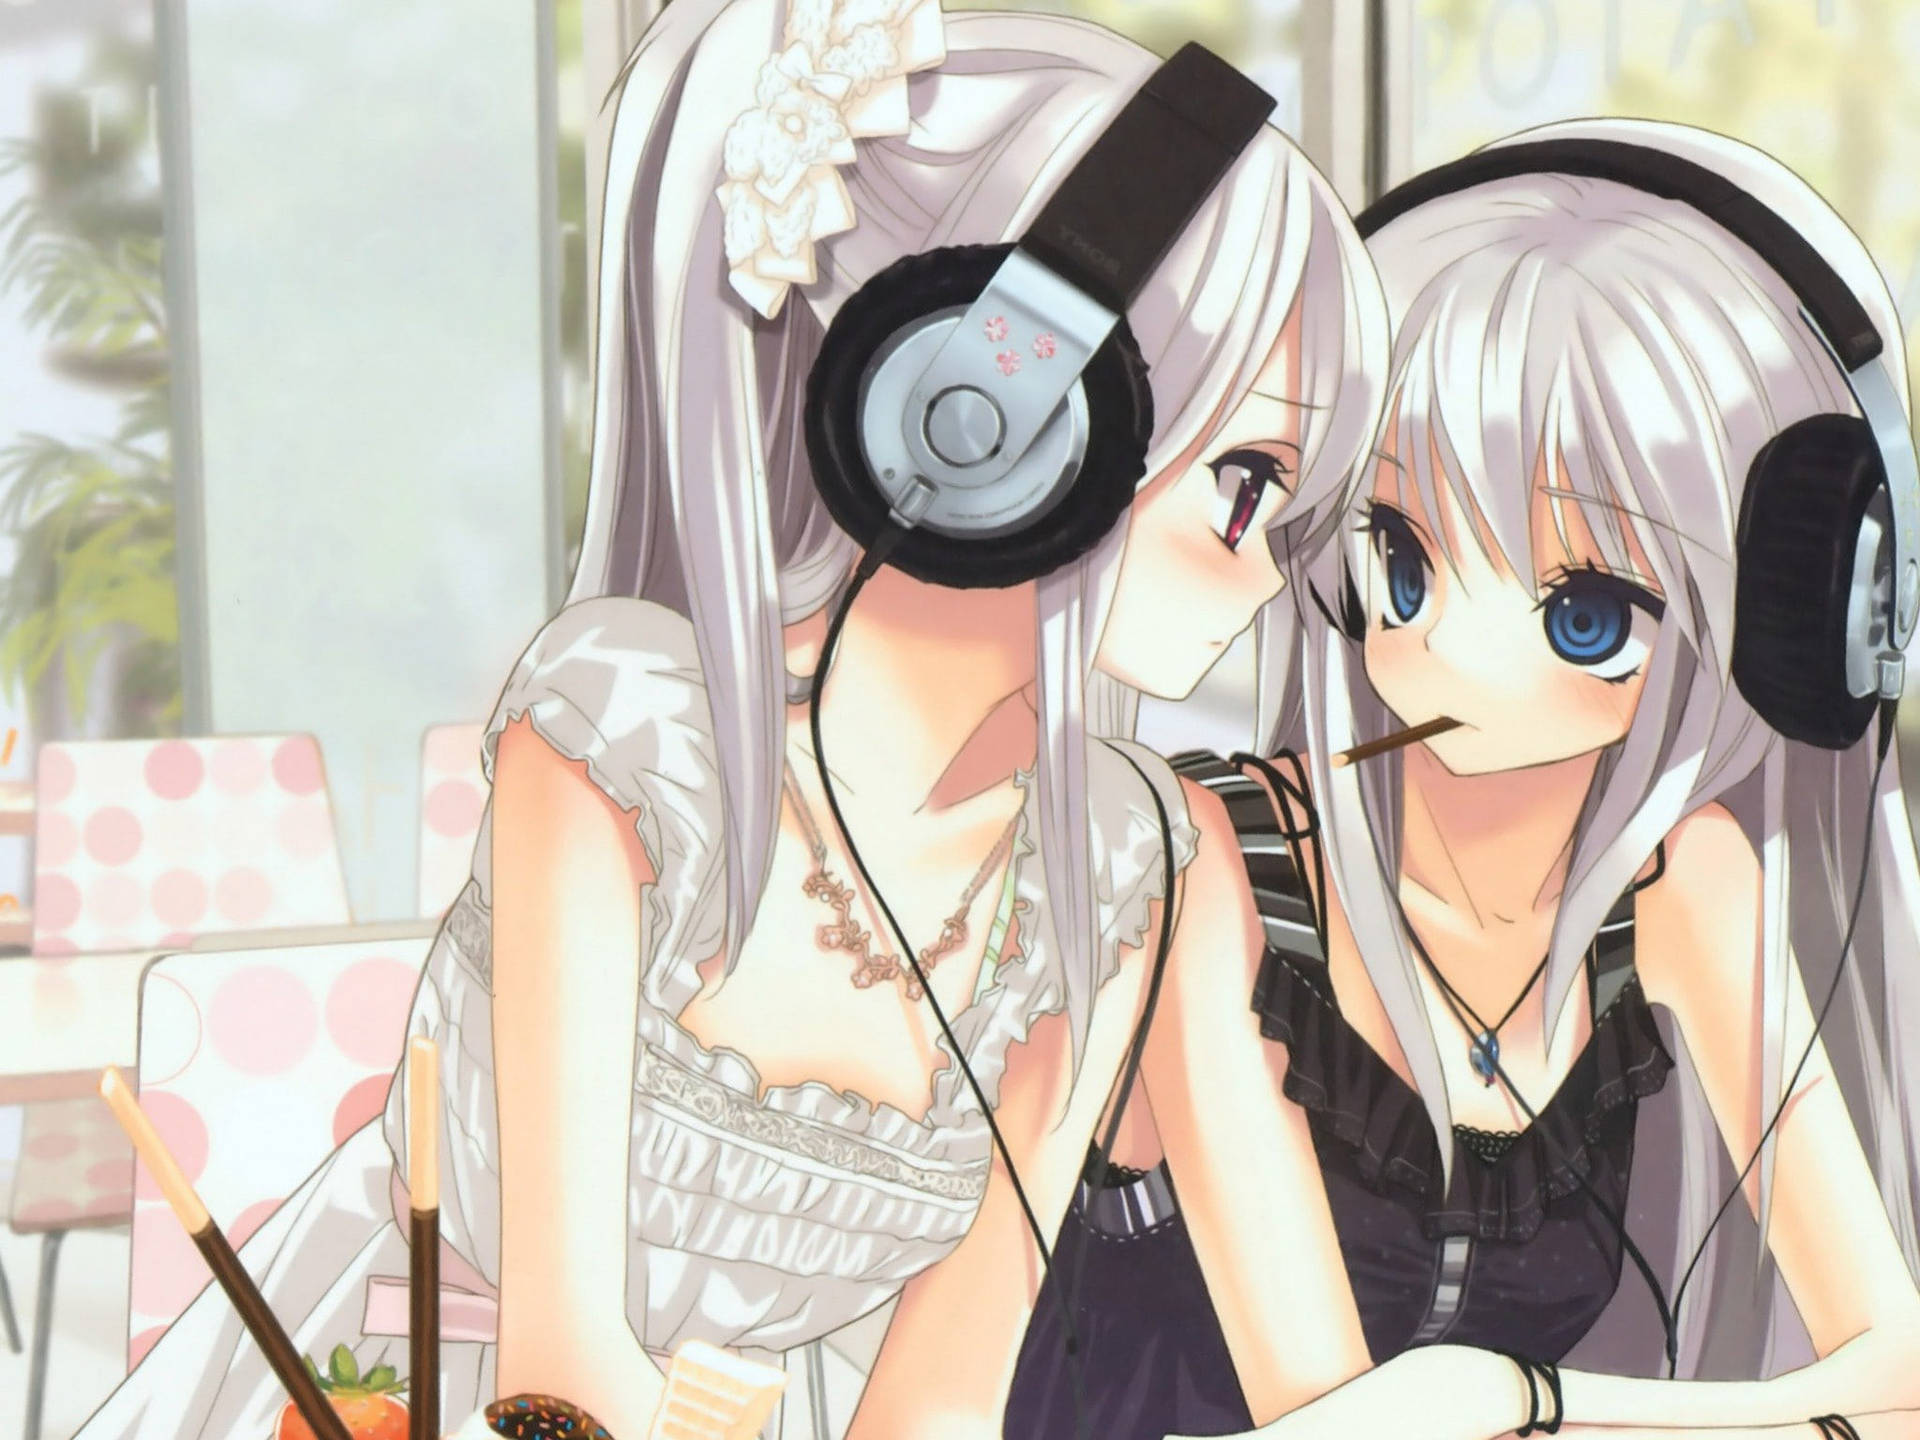 Music Lover Anime Lesbians